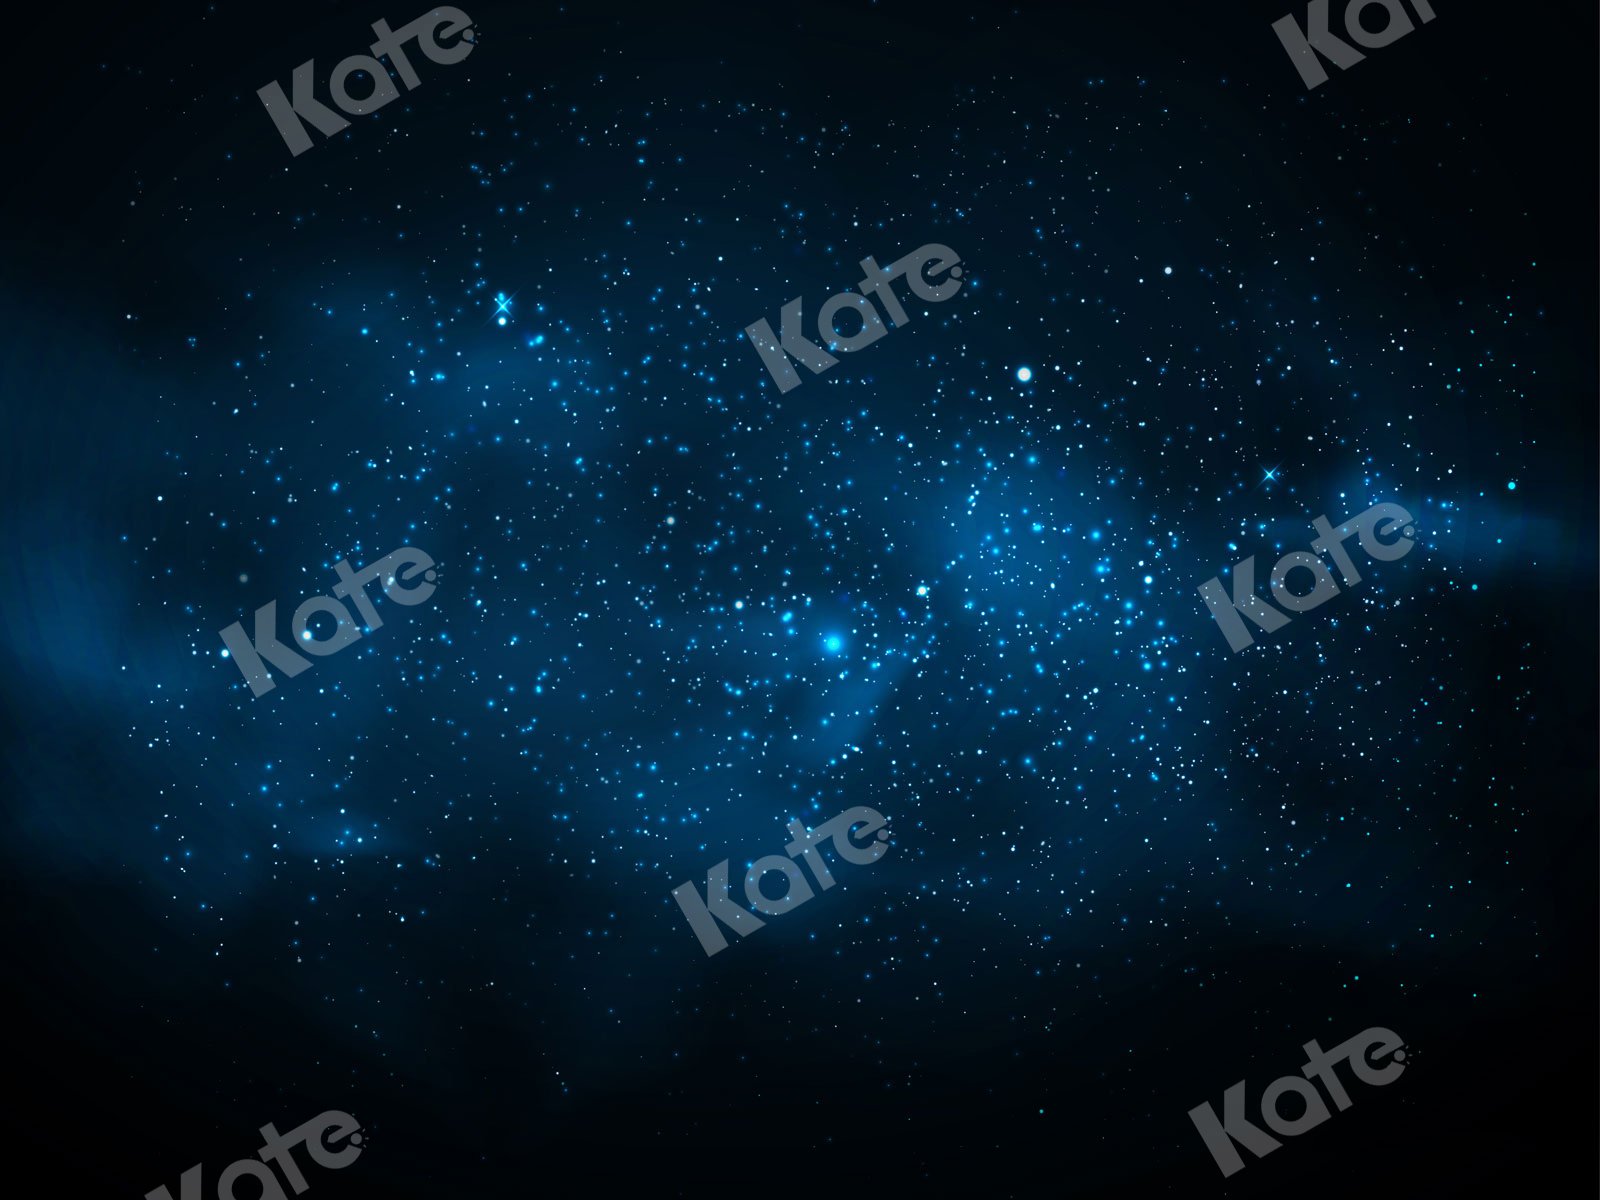 Kate Starry Night Backdrop Stars Universe Designed By JS Photography